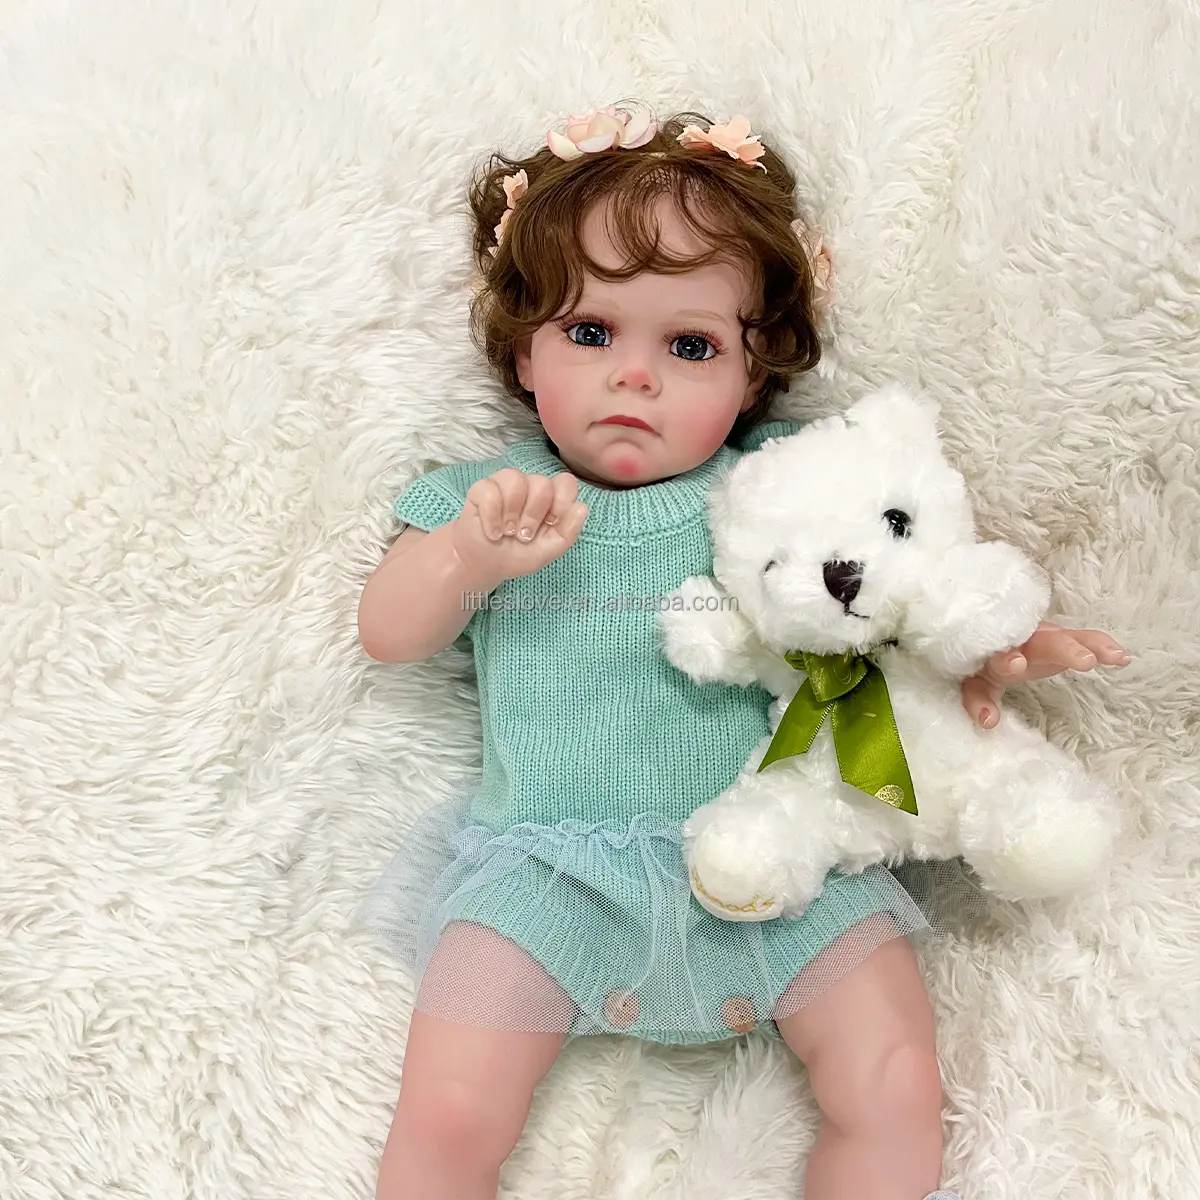 Muñeca de bebé Reborn de silicona realista de 60cm, muñecas de princesa Maggie para niñas, regalo de cumpleaños para niños